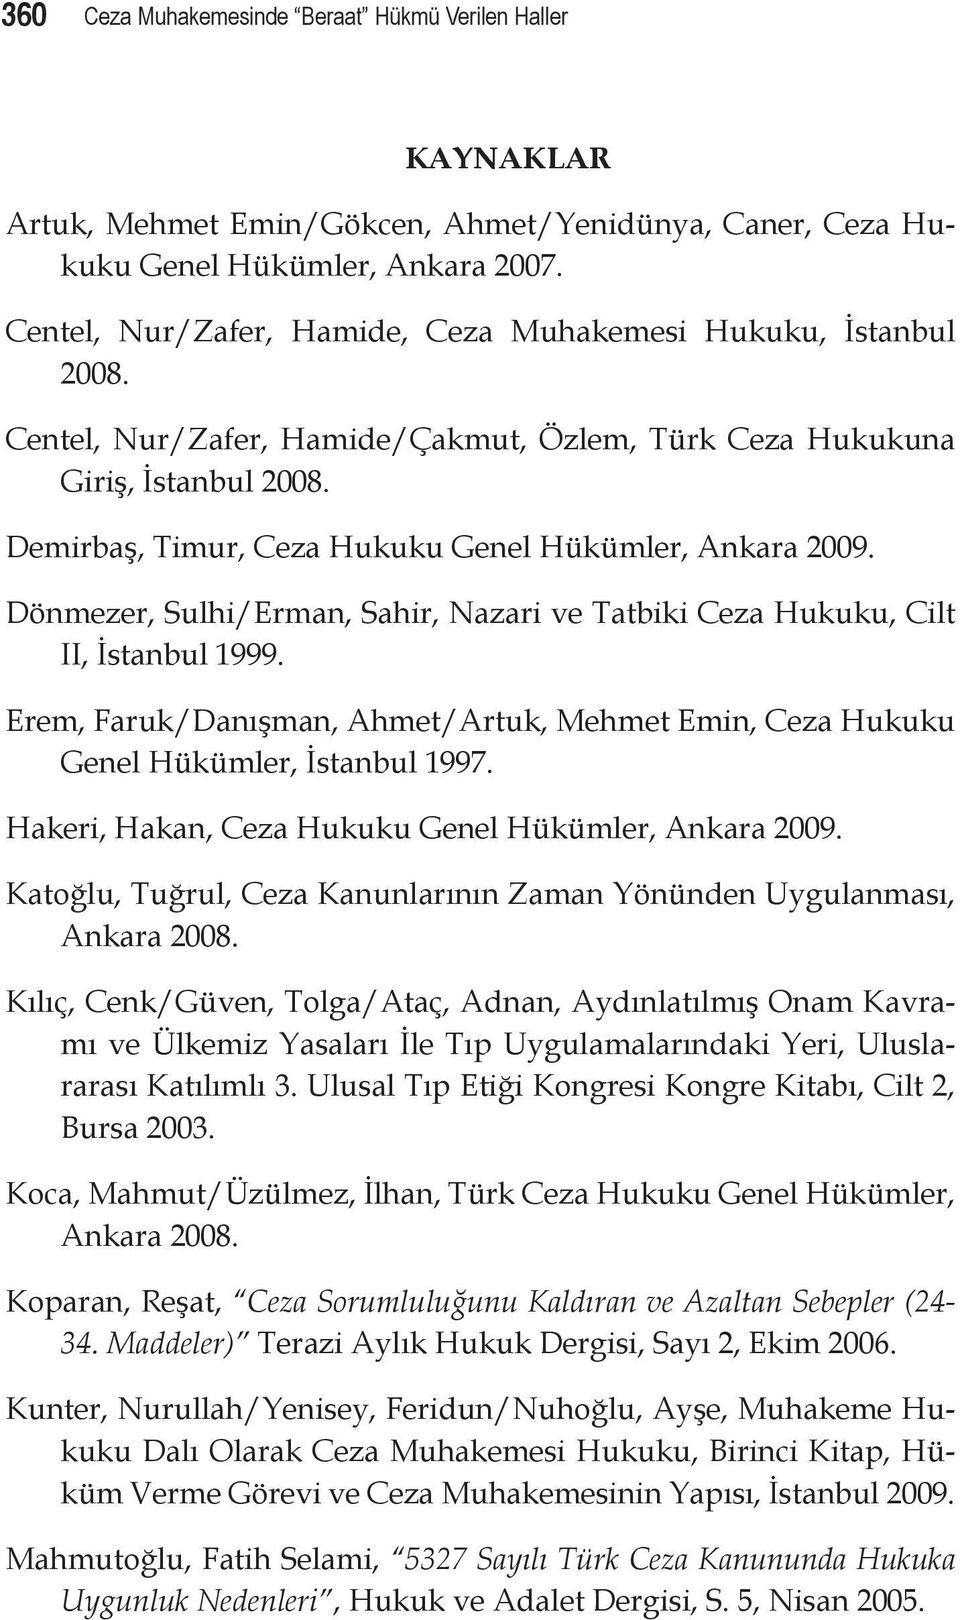 Demirbaş, Timur, Ceza Hukuku Genel Hükümler, Ankara 2009. Dönmezer, Sulhi/Erman, Sahir, Nazari ve Tatbiki Ceza Hukuku, Cilt II, İstanbul 1999.